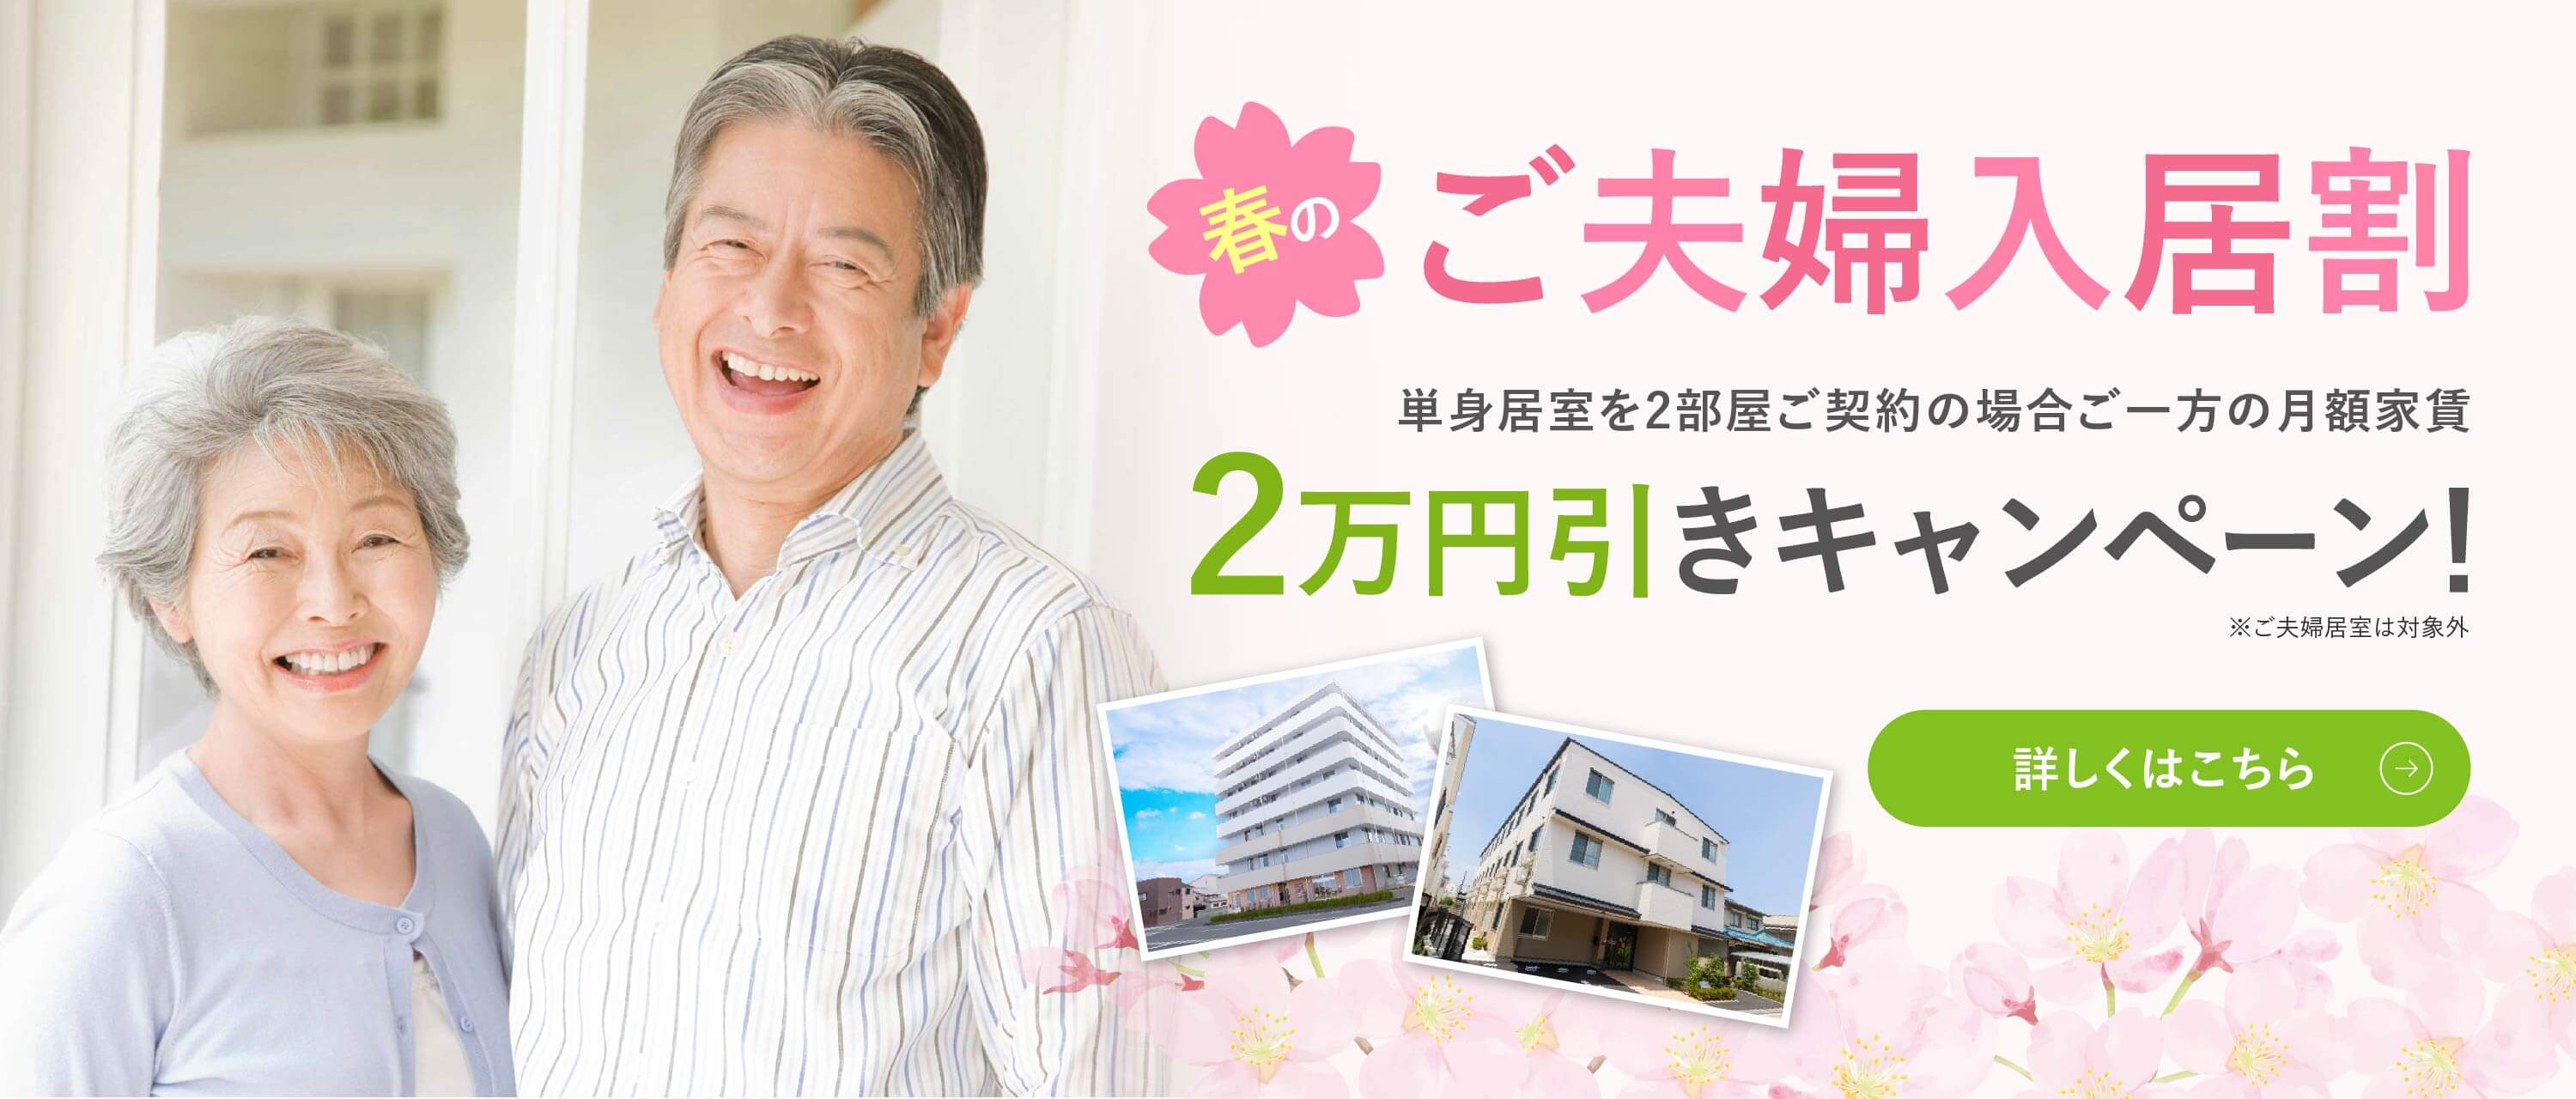 ご夫婦入居割 2万円引きキャンペーン 詳しくはこちら